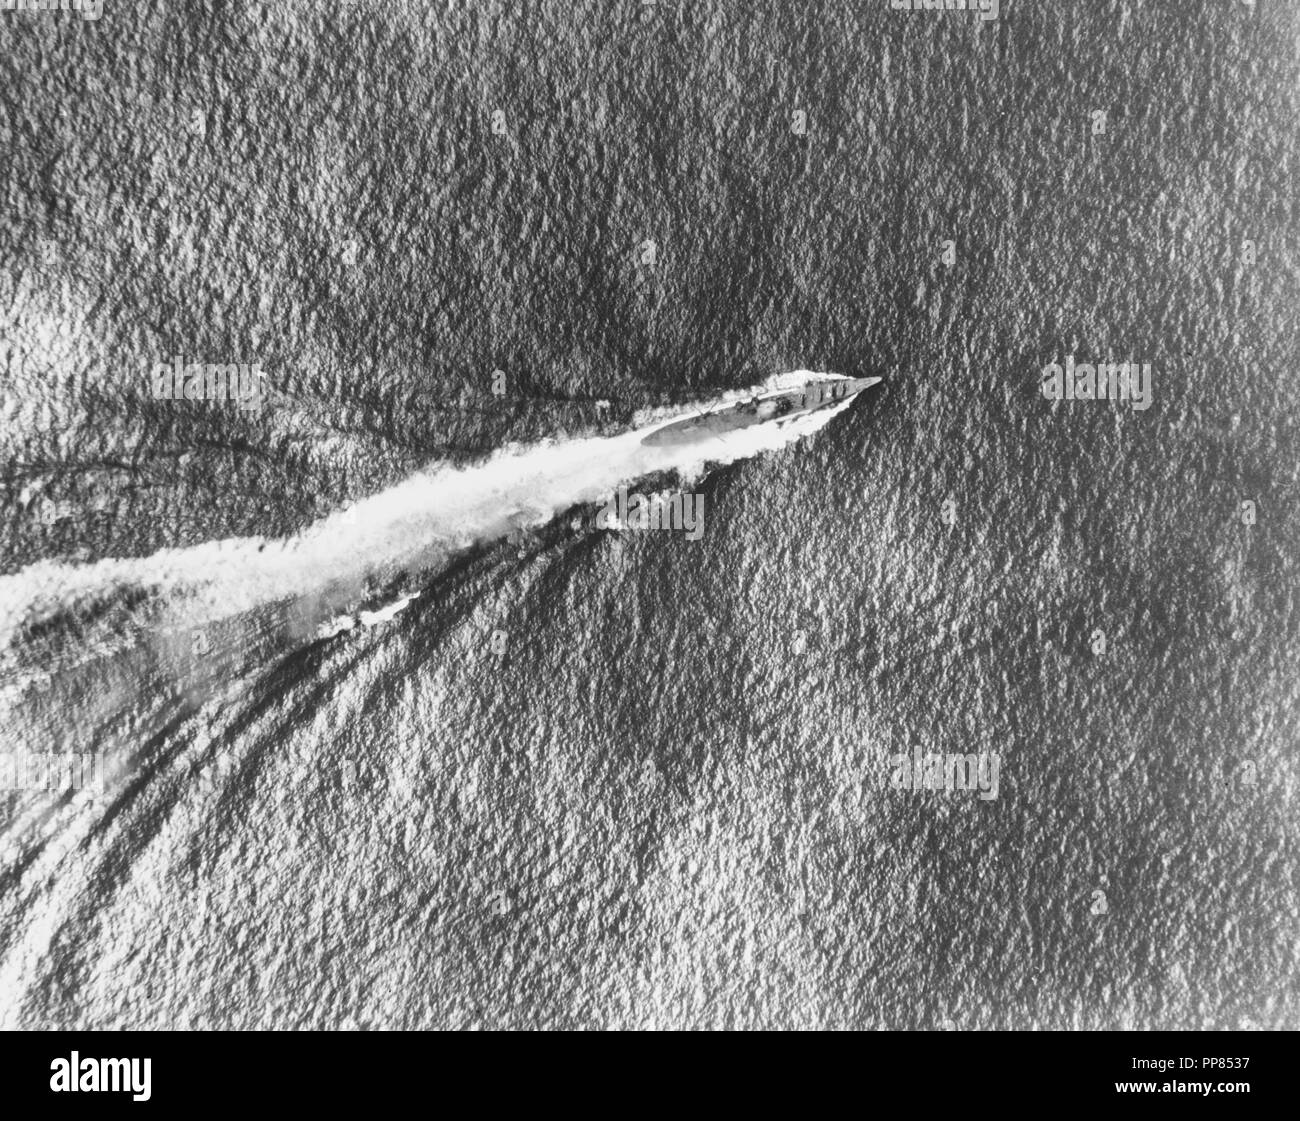 La bataille de Santa Cruz, octobre 1942 - croiseur lourd japonais Chikuma en cours pendant la bataille, comme vu à partir d'un USS Enterprise (CV-6), 26 octobre 1942. Remarque La fumée s'échapper de sa zone pont, qui avait été touché par une bombe. Banque D'Images